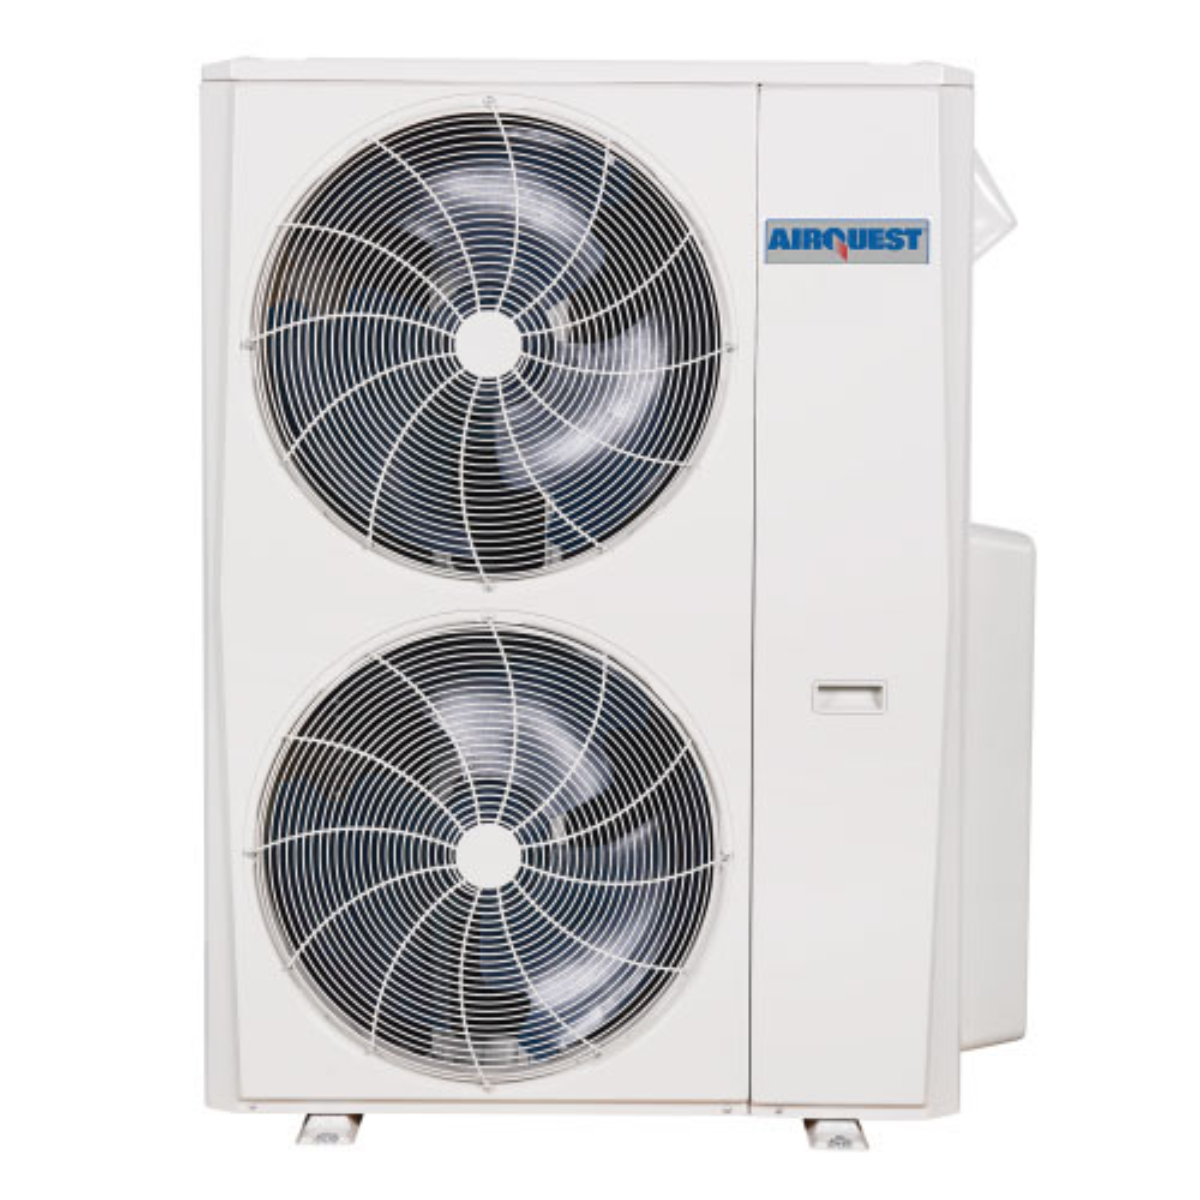 Multi-Zone Air Conditioners - Nordics